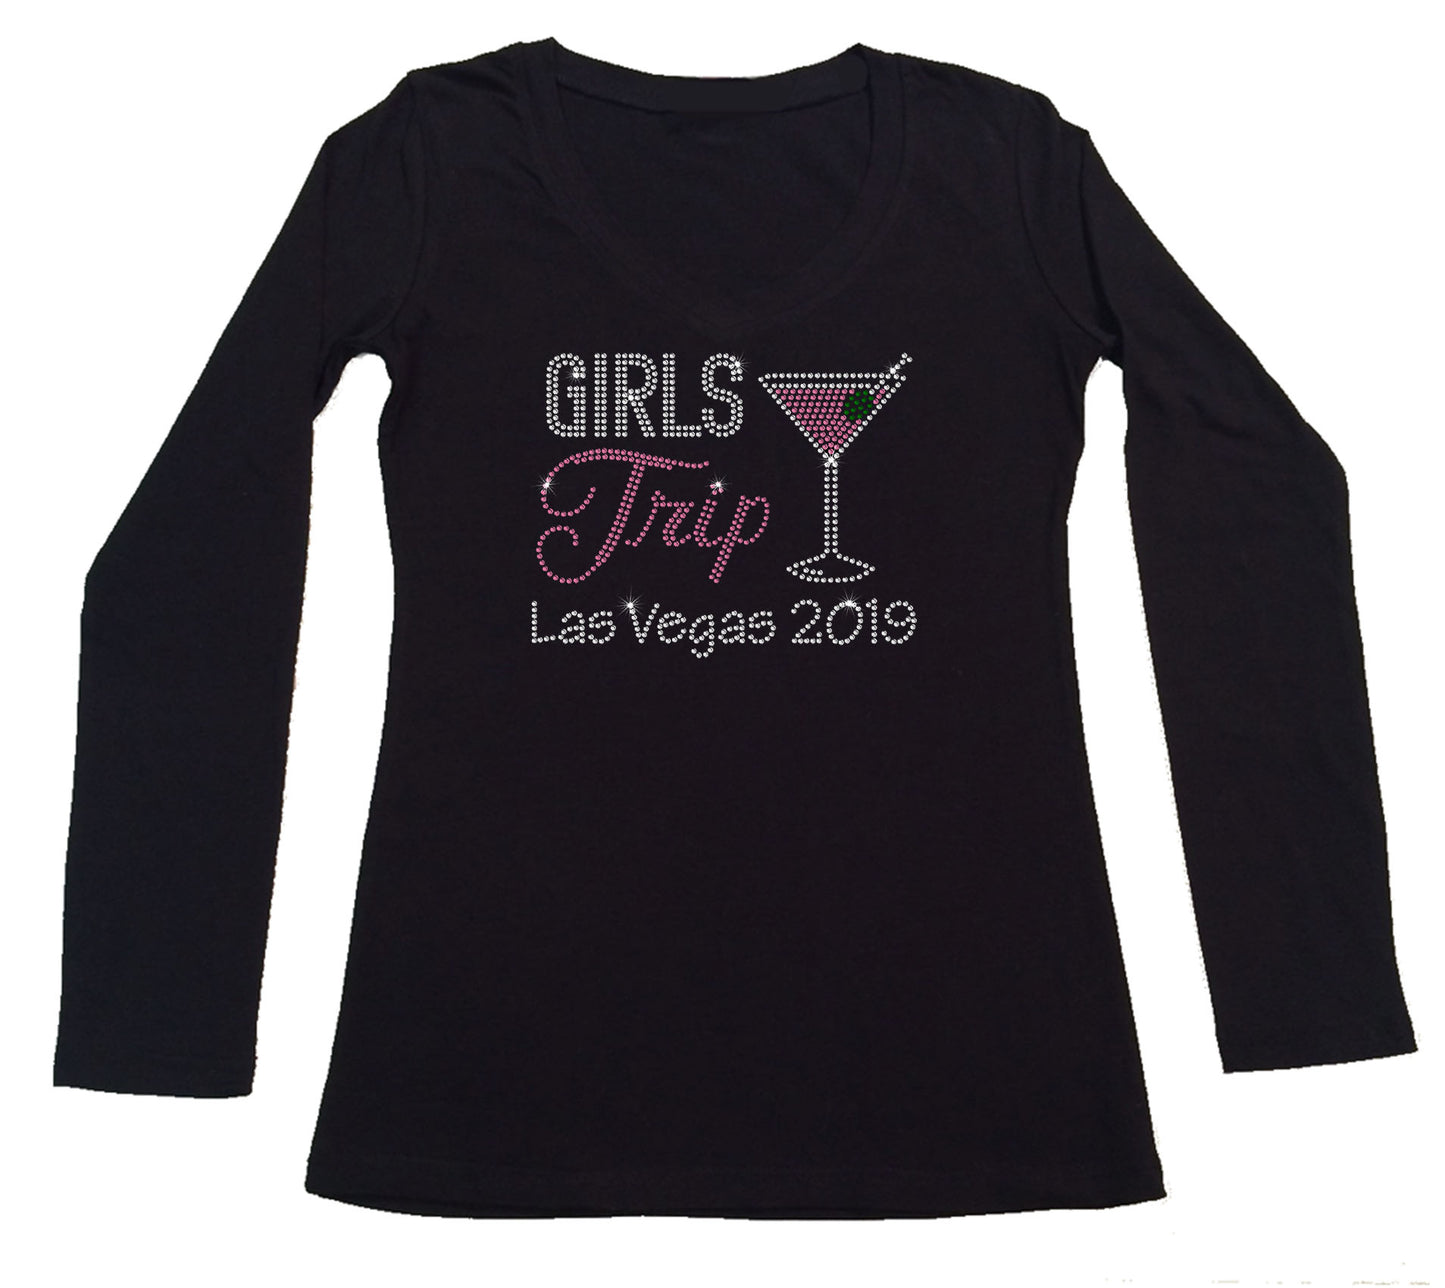 Womens T-shirt with Girls Trip Martini in Rhinestones